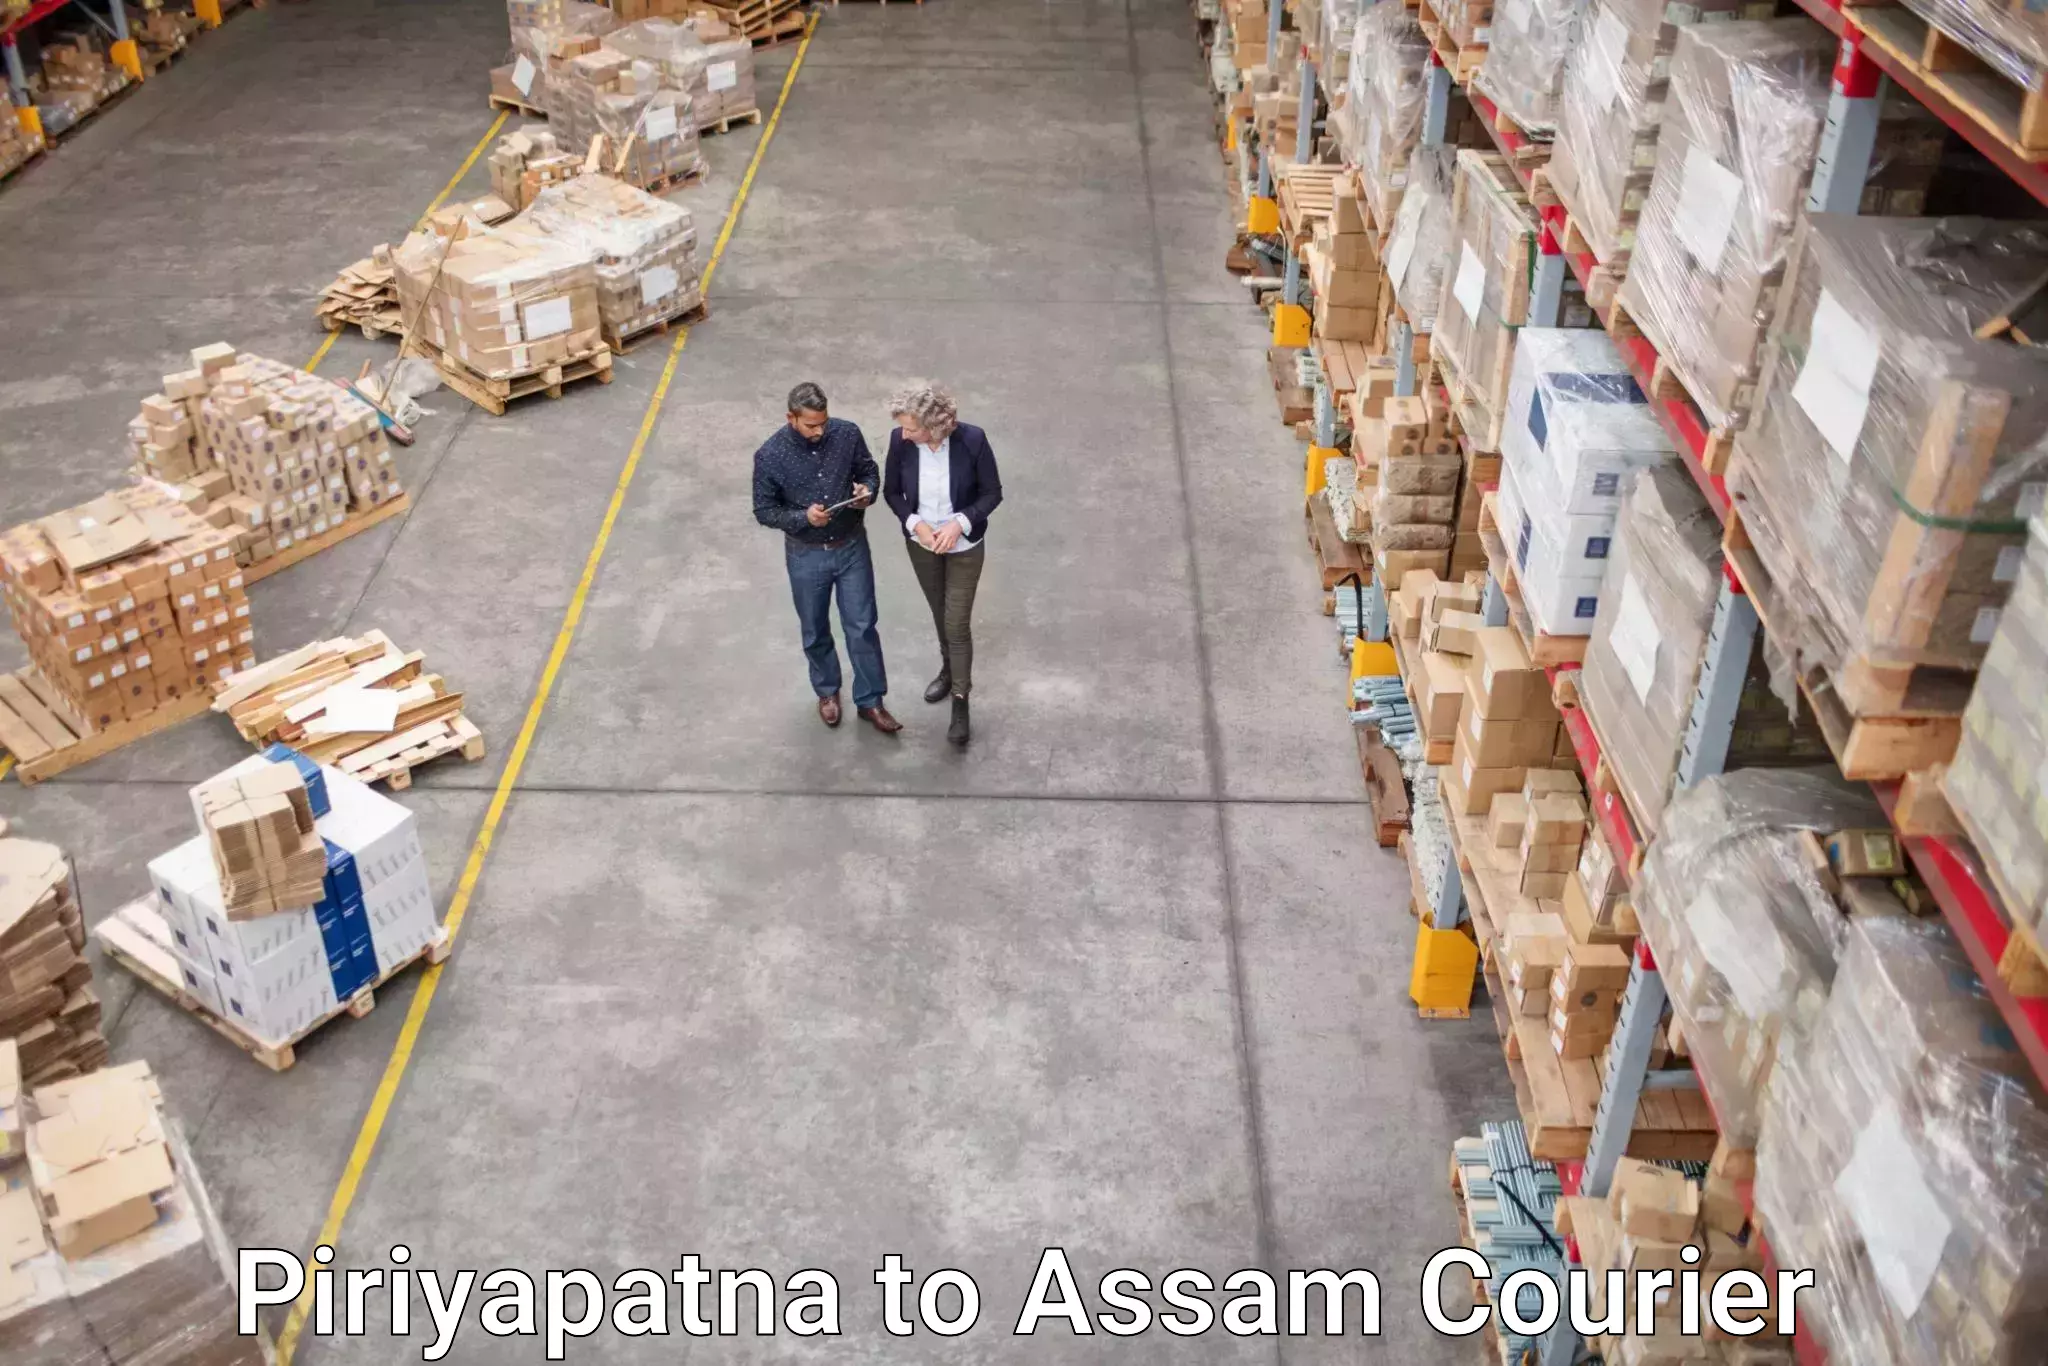 Digital courier platforms Piriyapatna to Assam